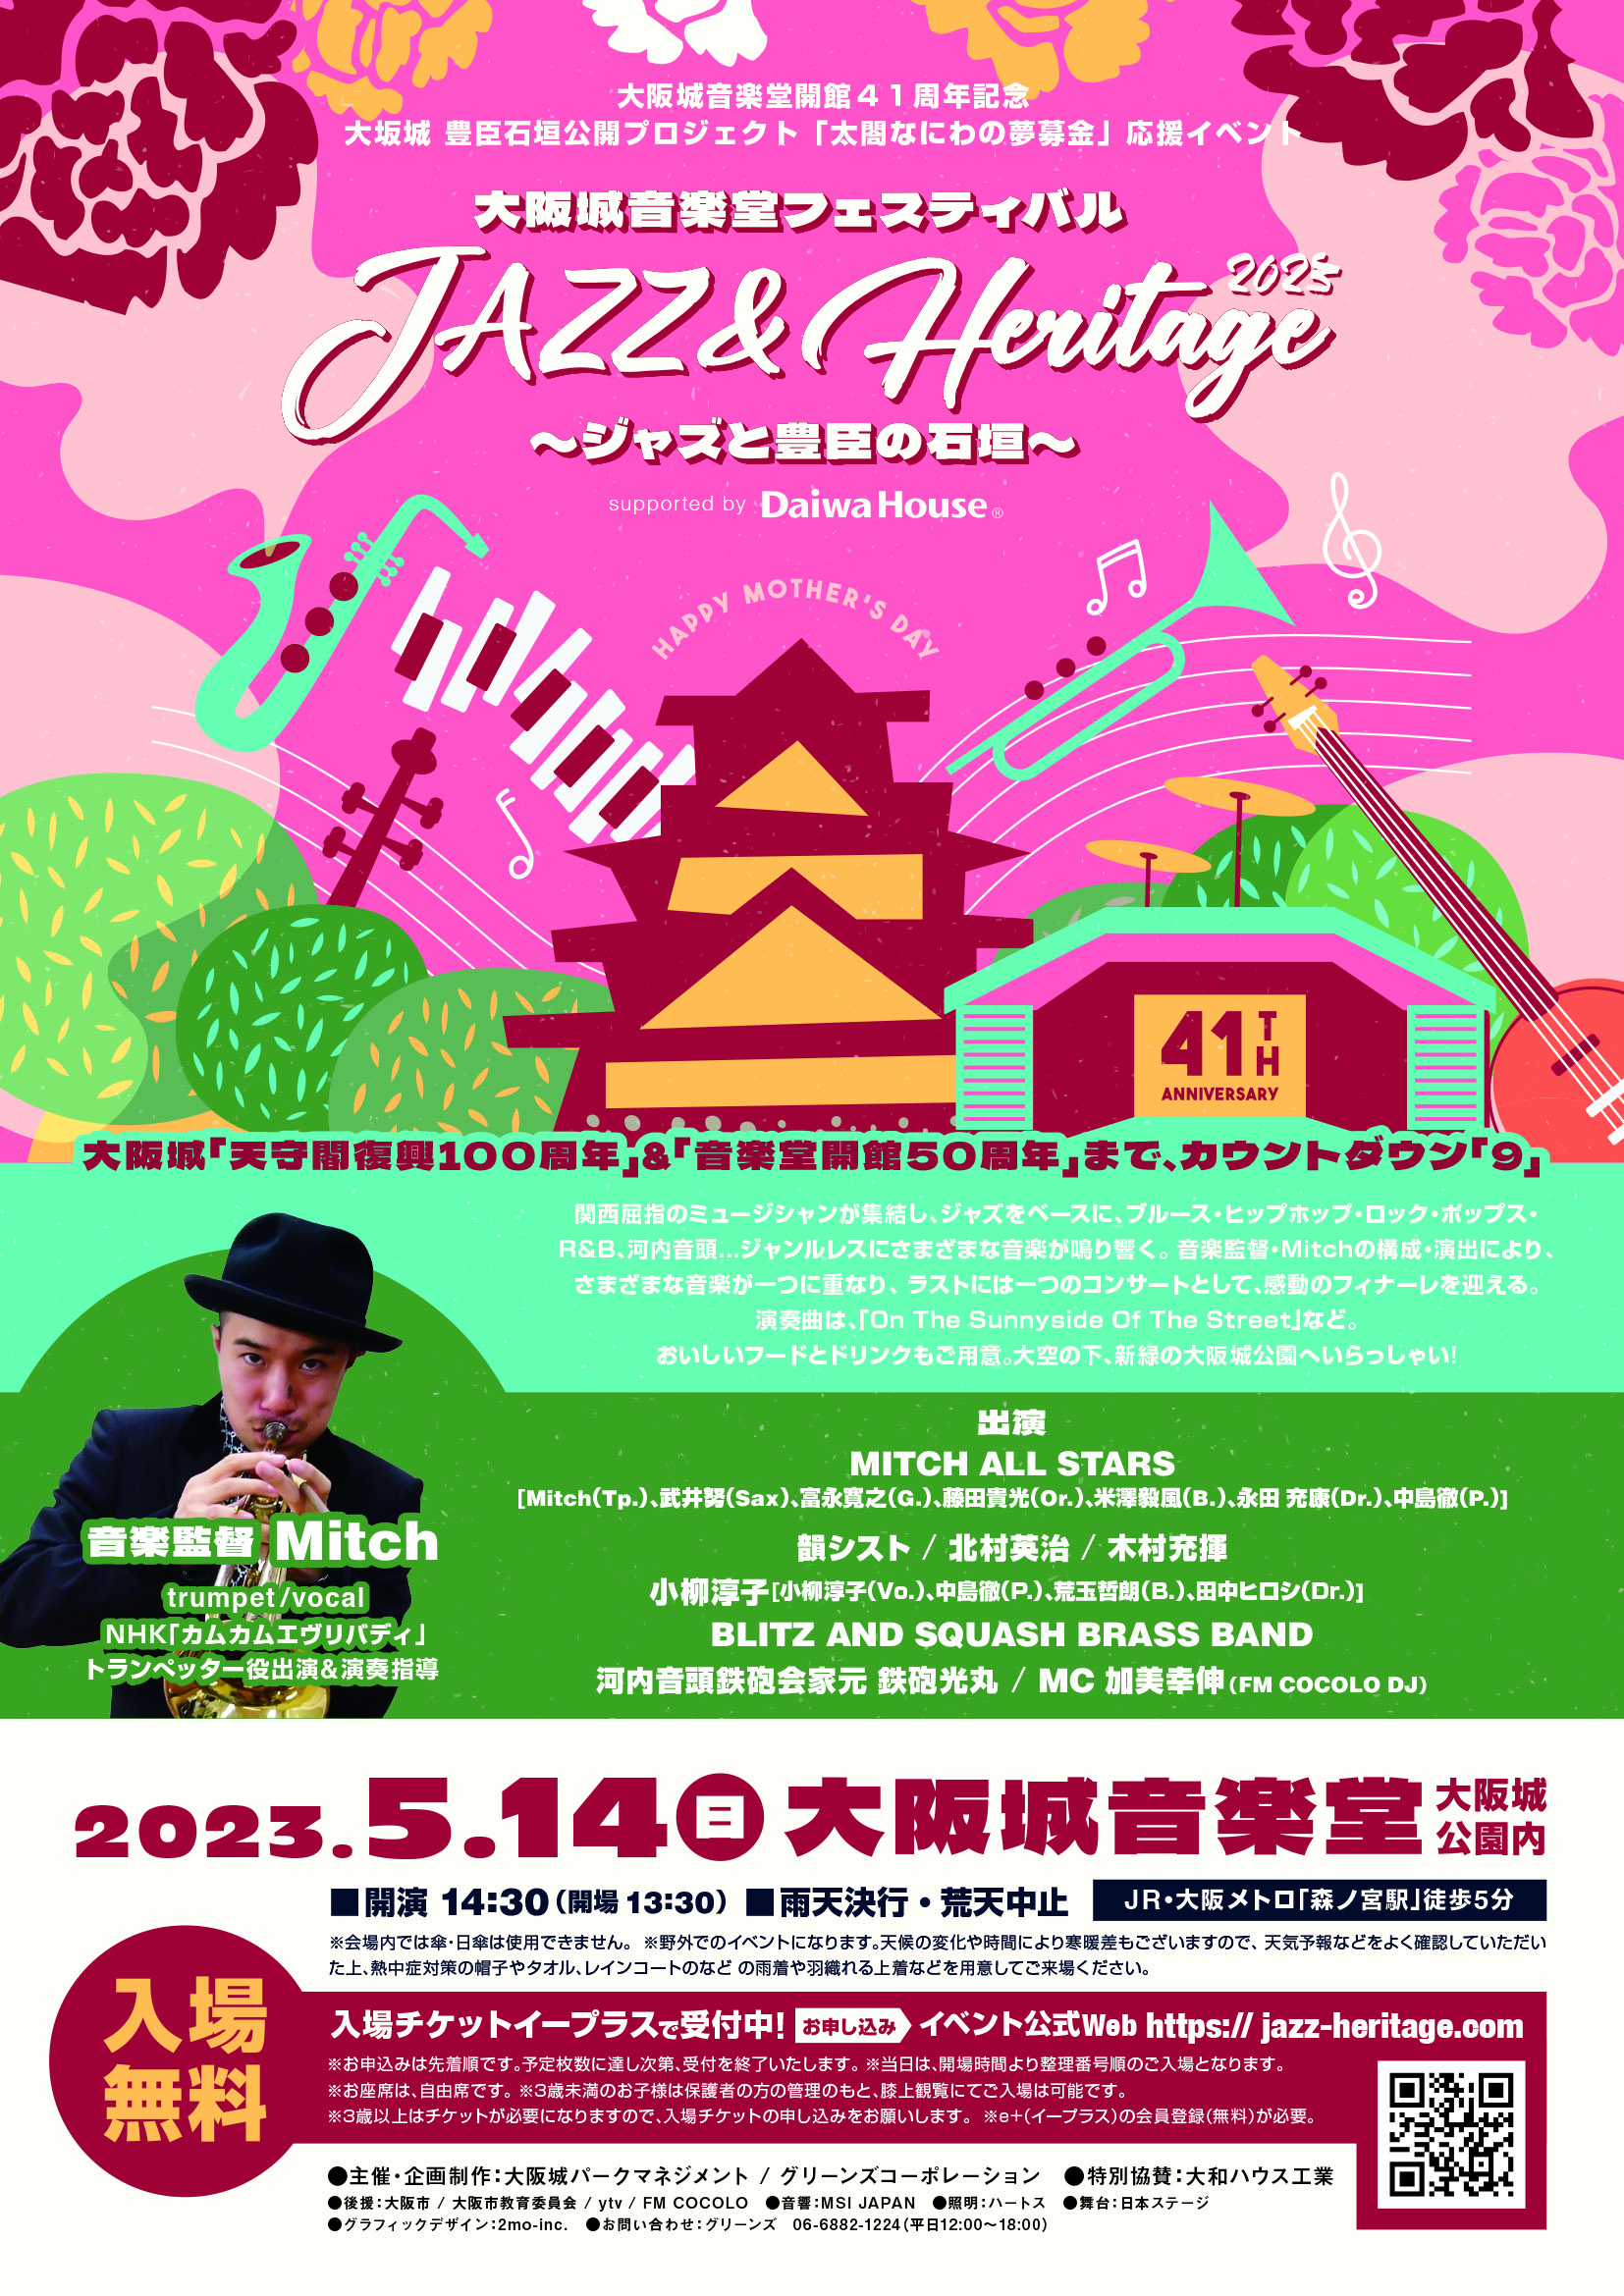 大阪城音楽堂フェスティバル Jazz & Heritage  ~ジャズと豊臣の遺構~